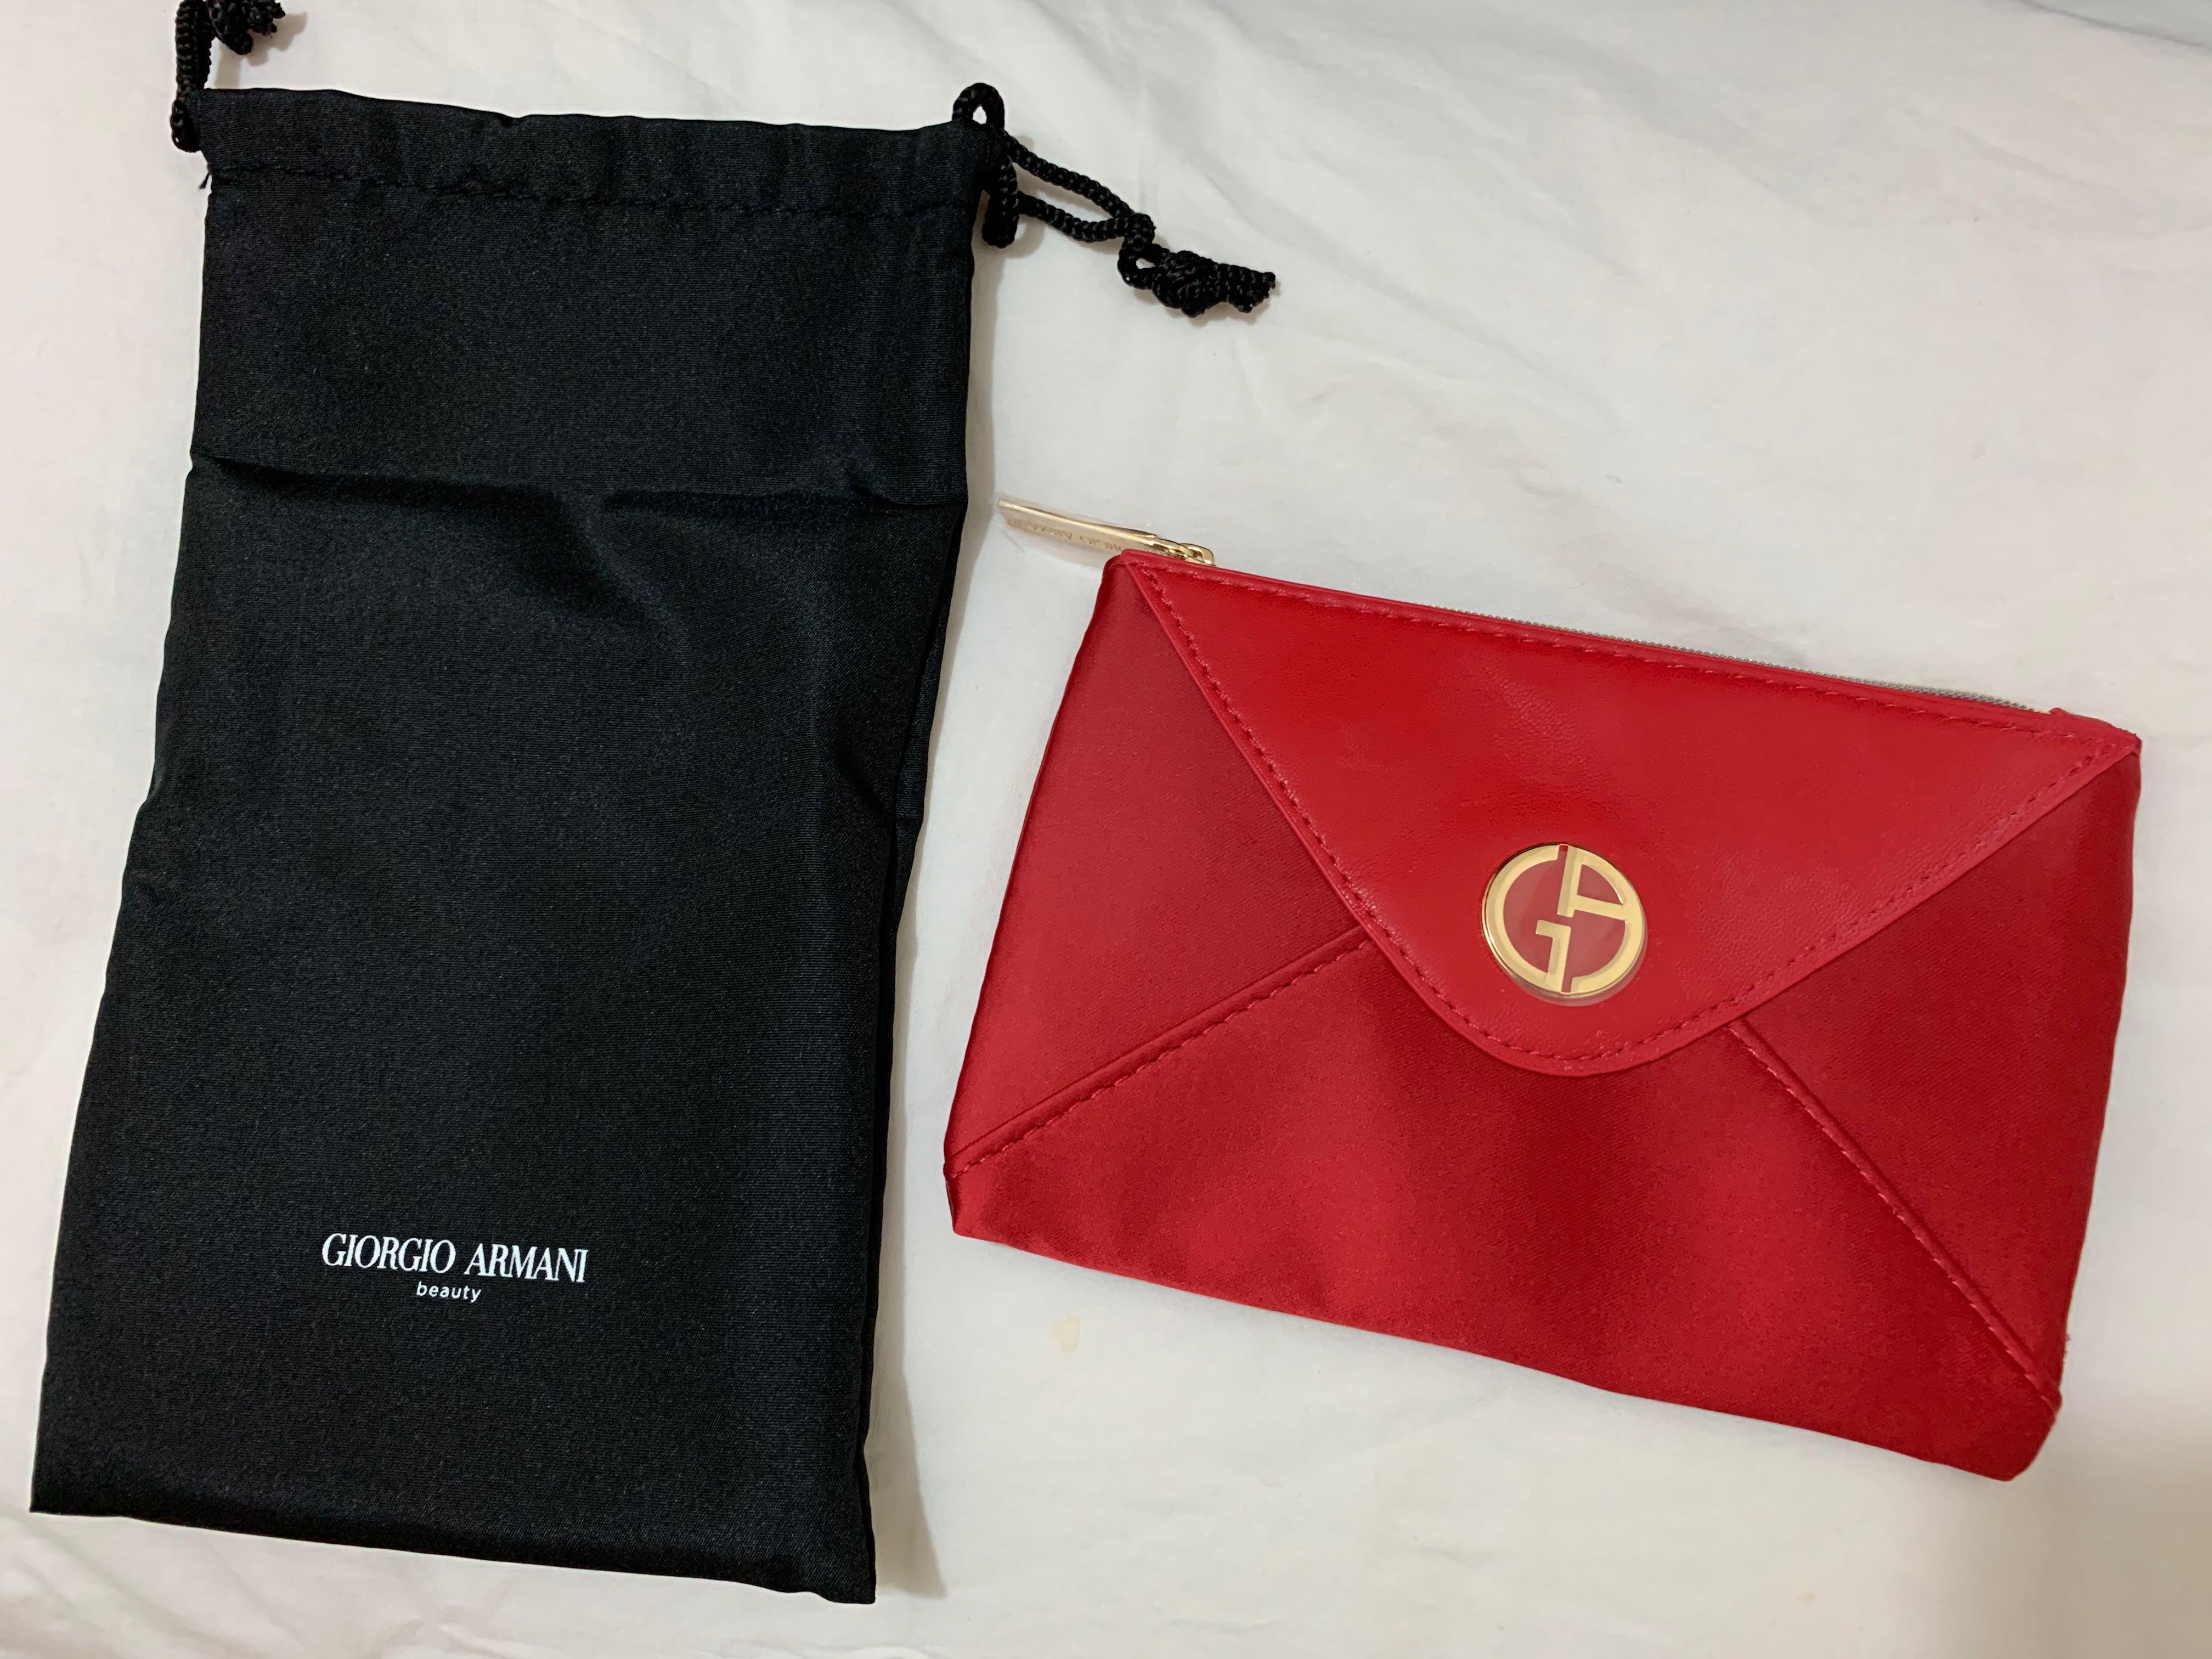 Giorgio Armani beauty cosmetic pouch 